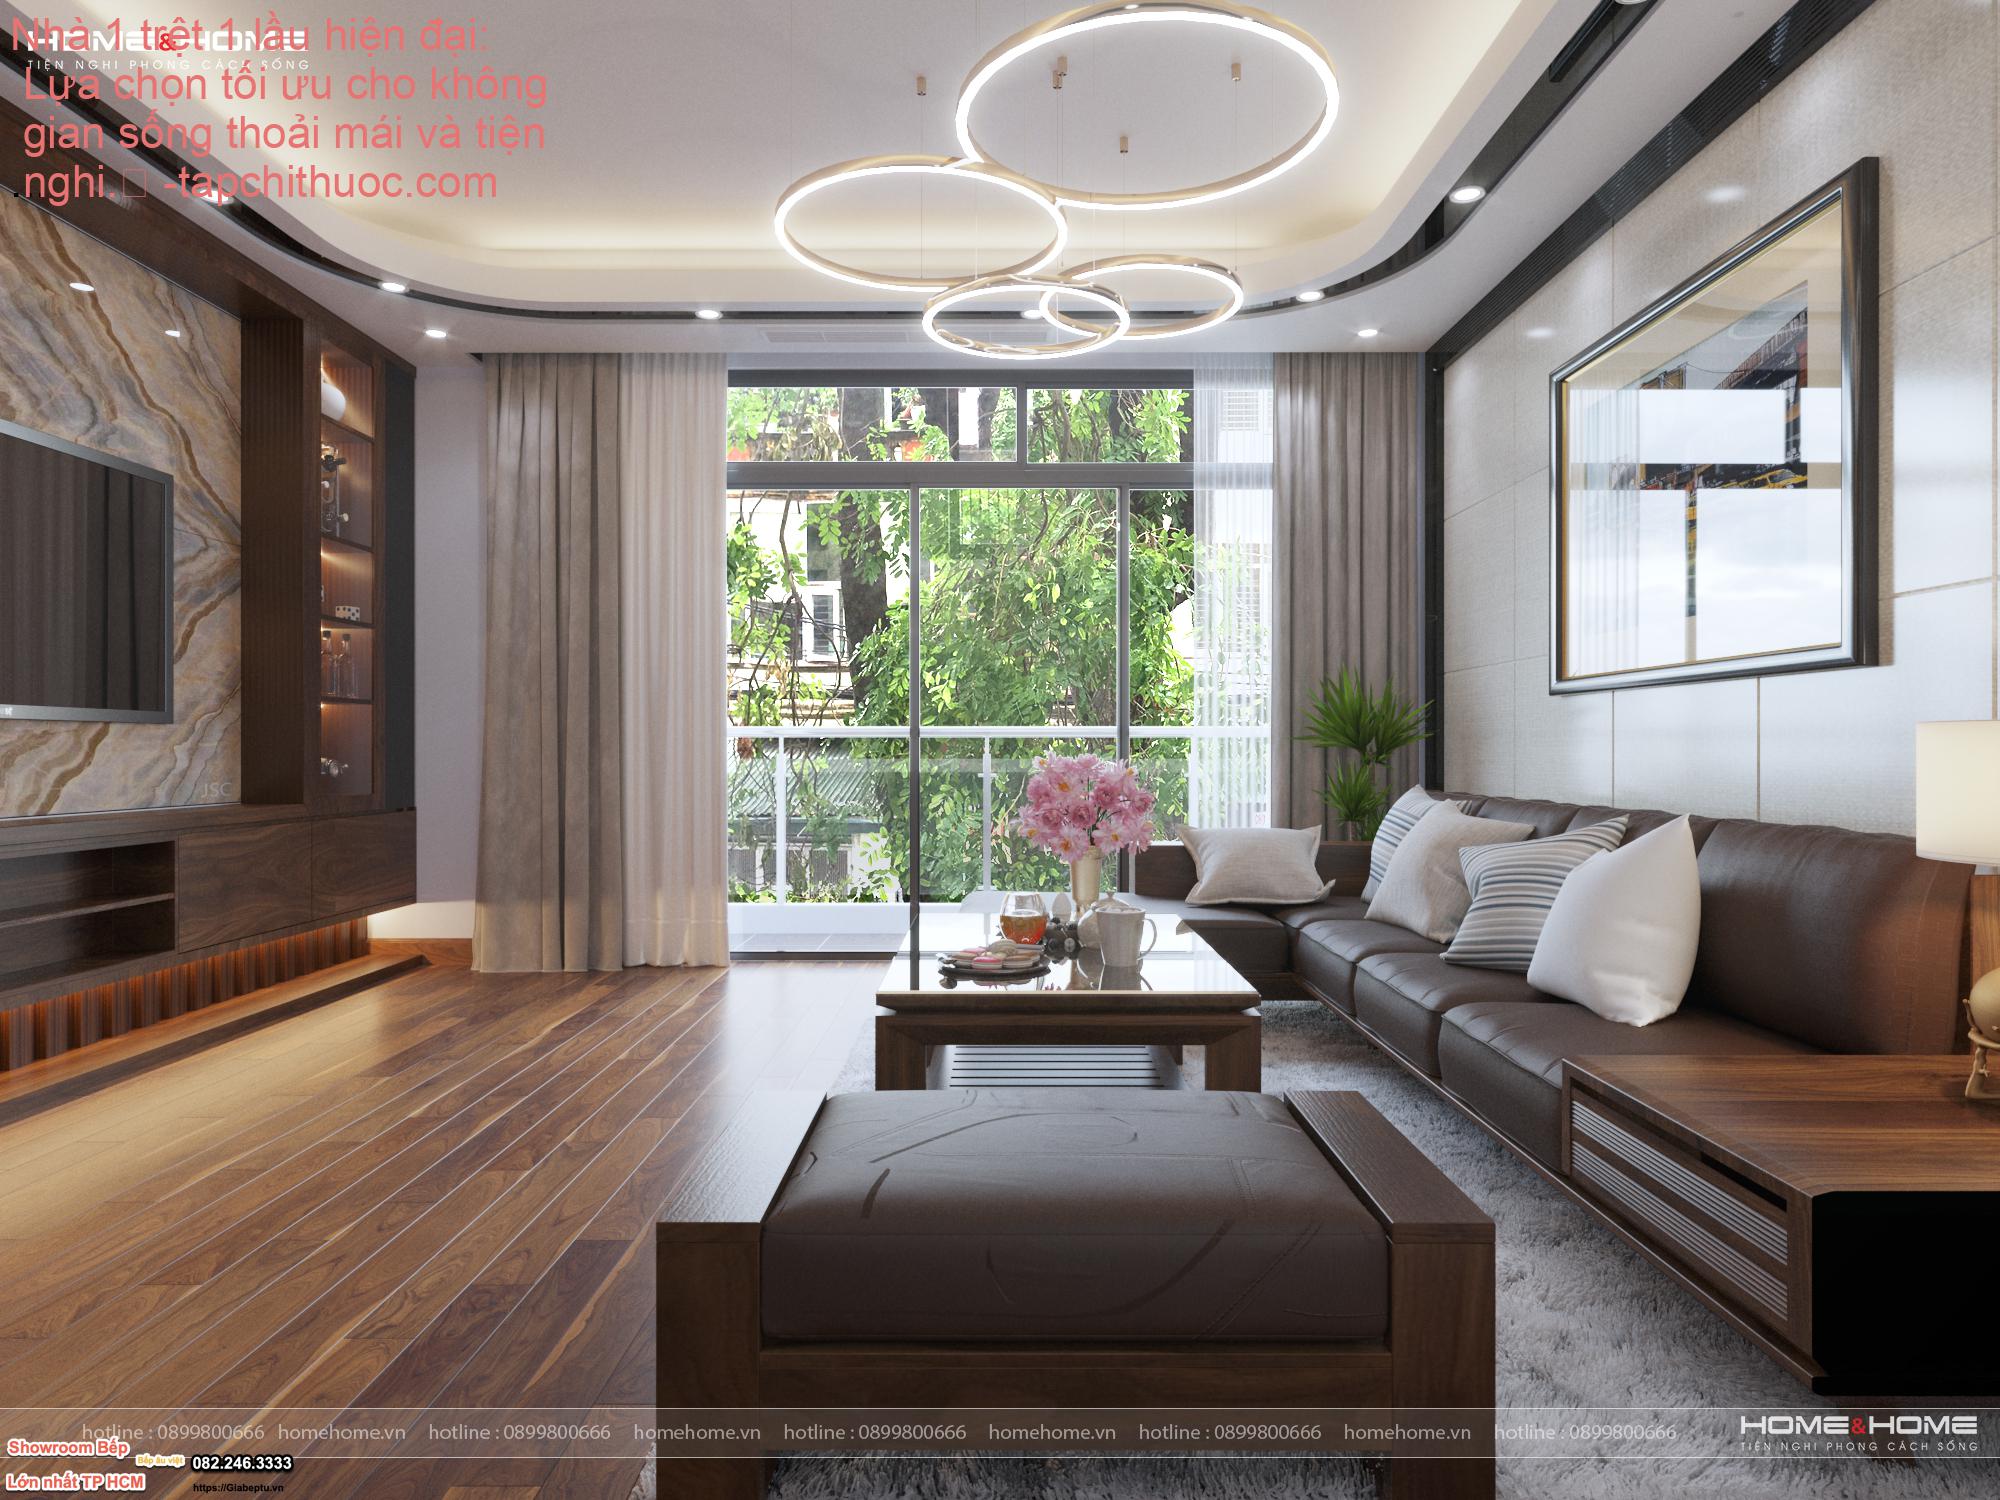 Nhà 1 trệt 1 lầu hiện đại: Lựa chọn tối ưu cho không gian sống thoải mái và tiện nghi.
